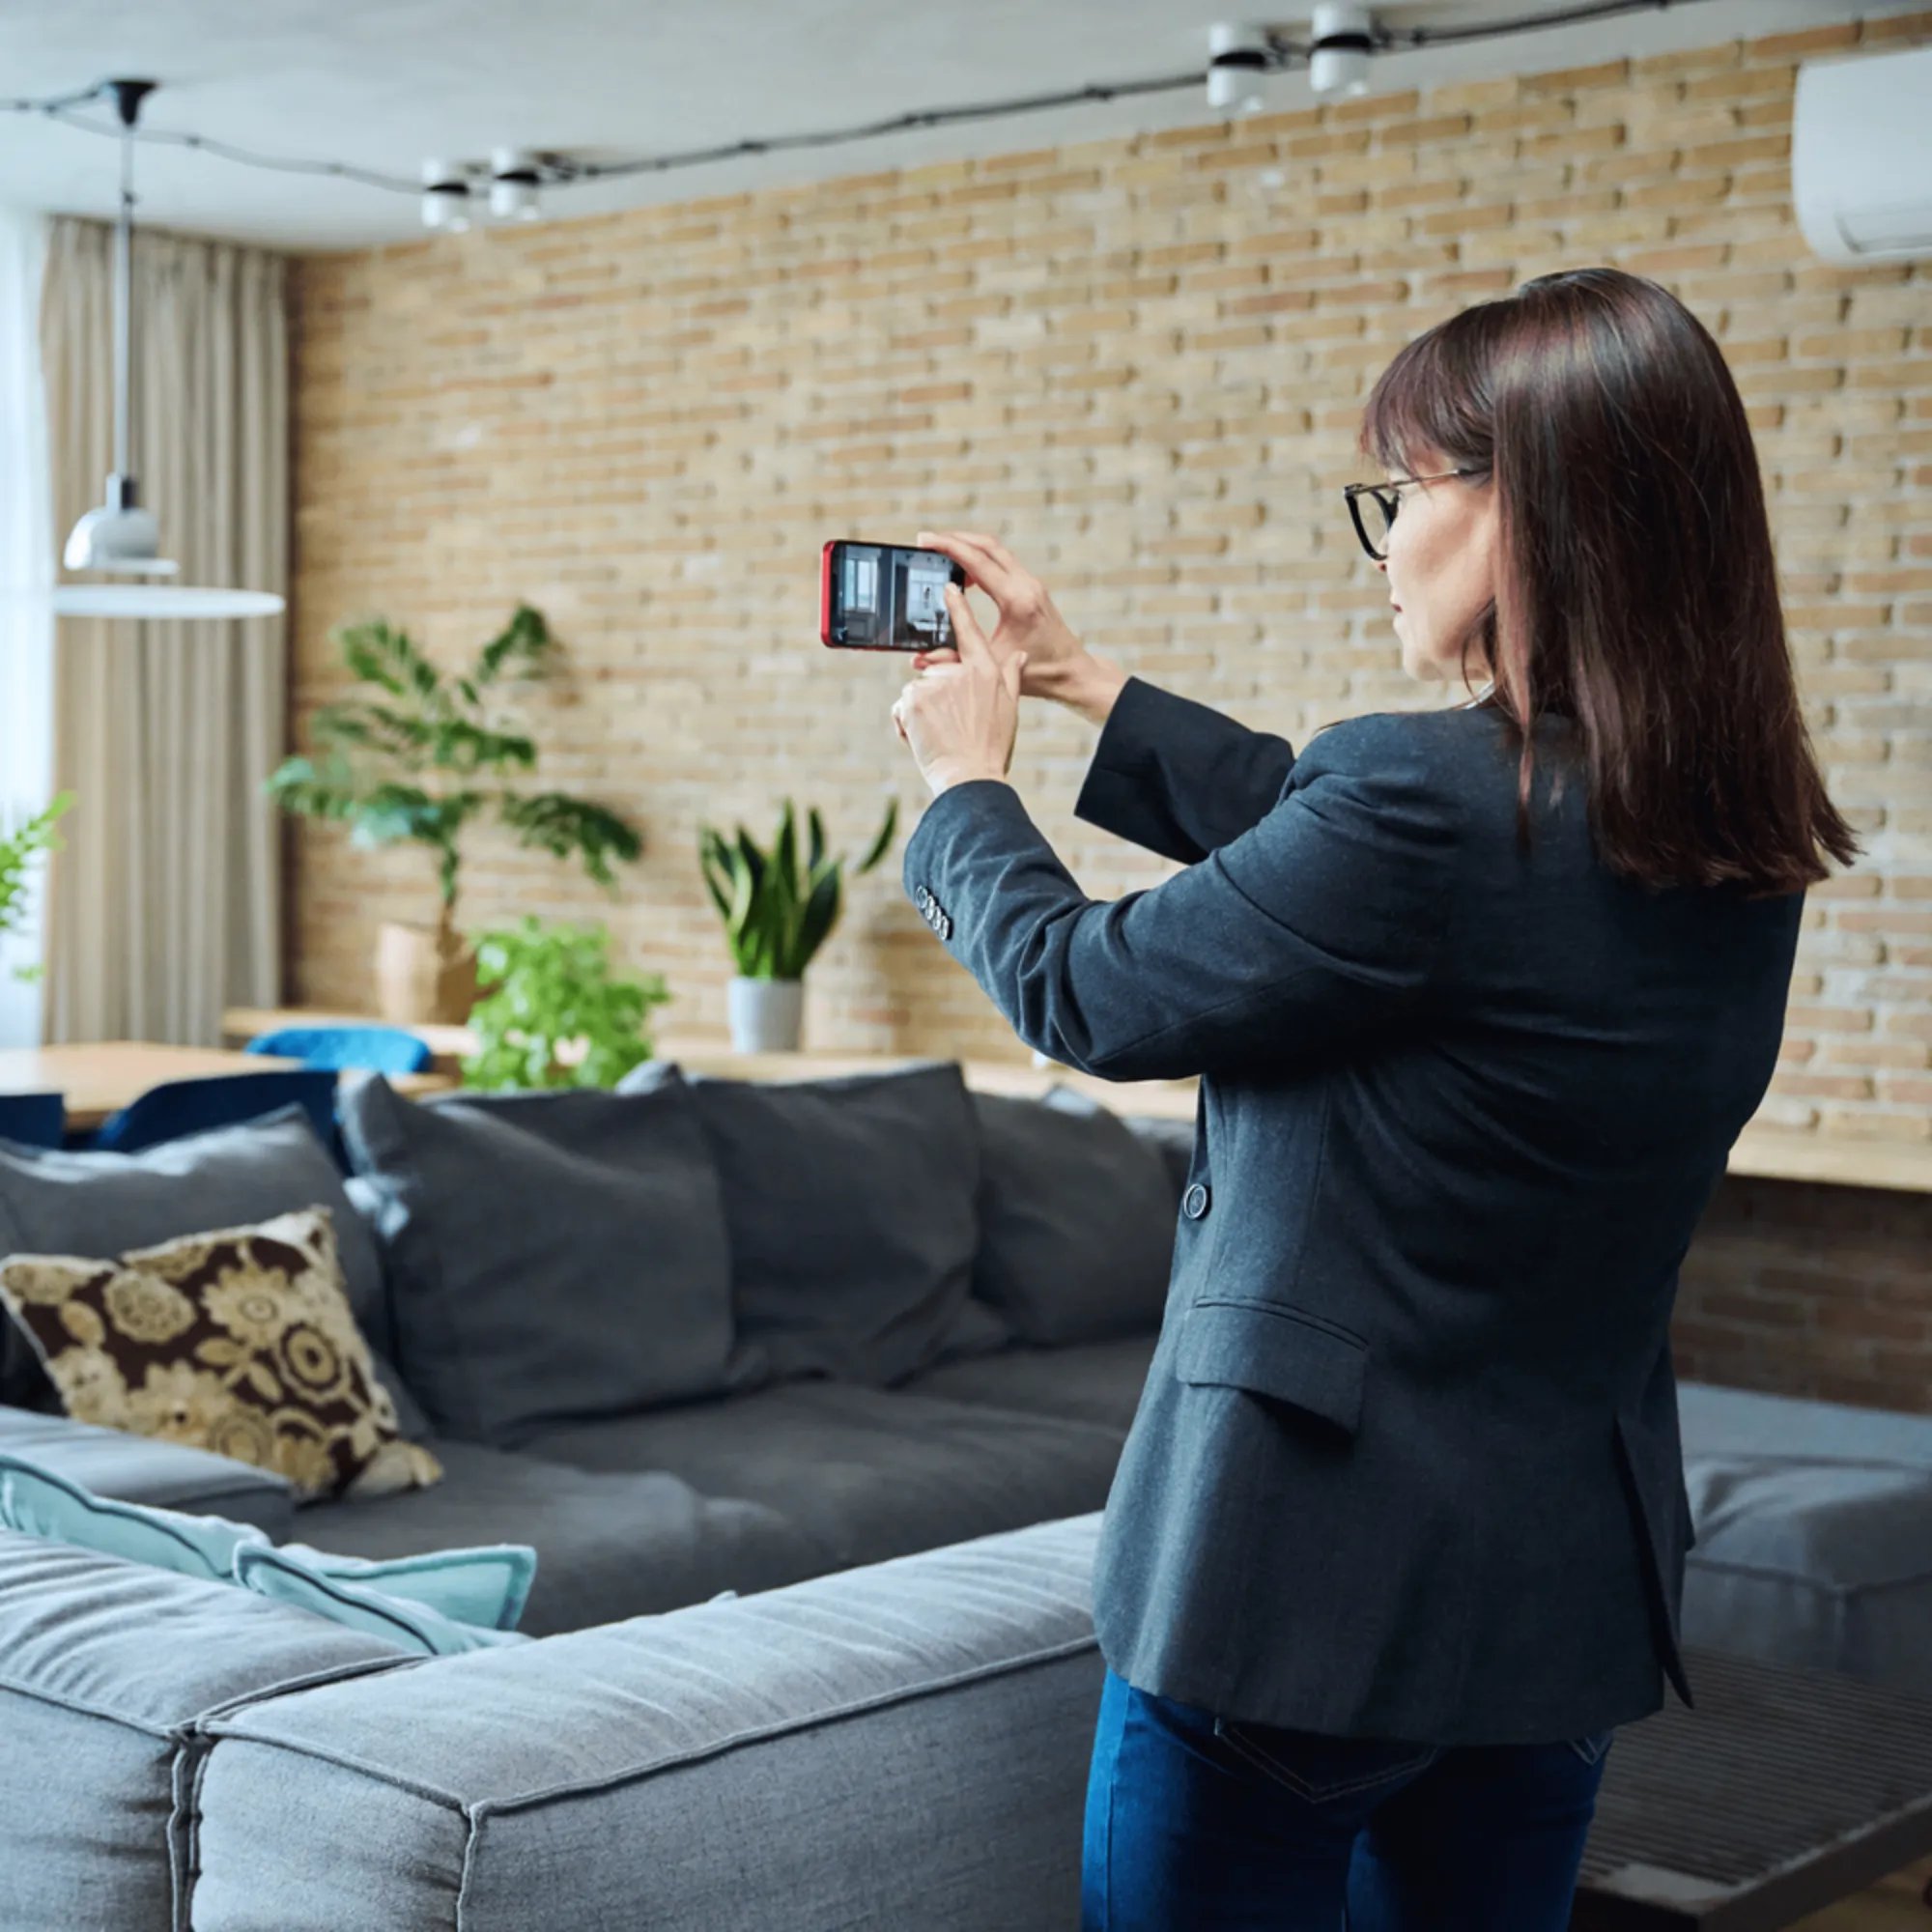 Agent indépendante réalisant une visite virtuelle d'un actif immobilier meublé